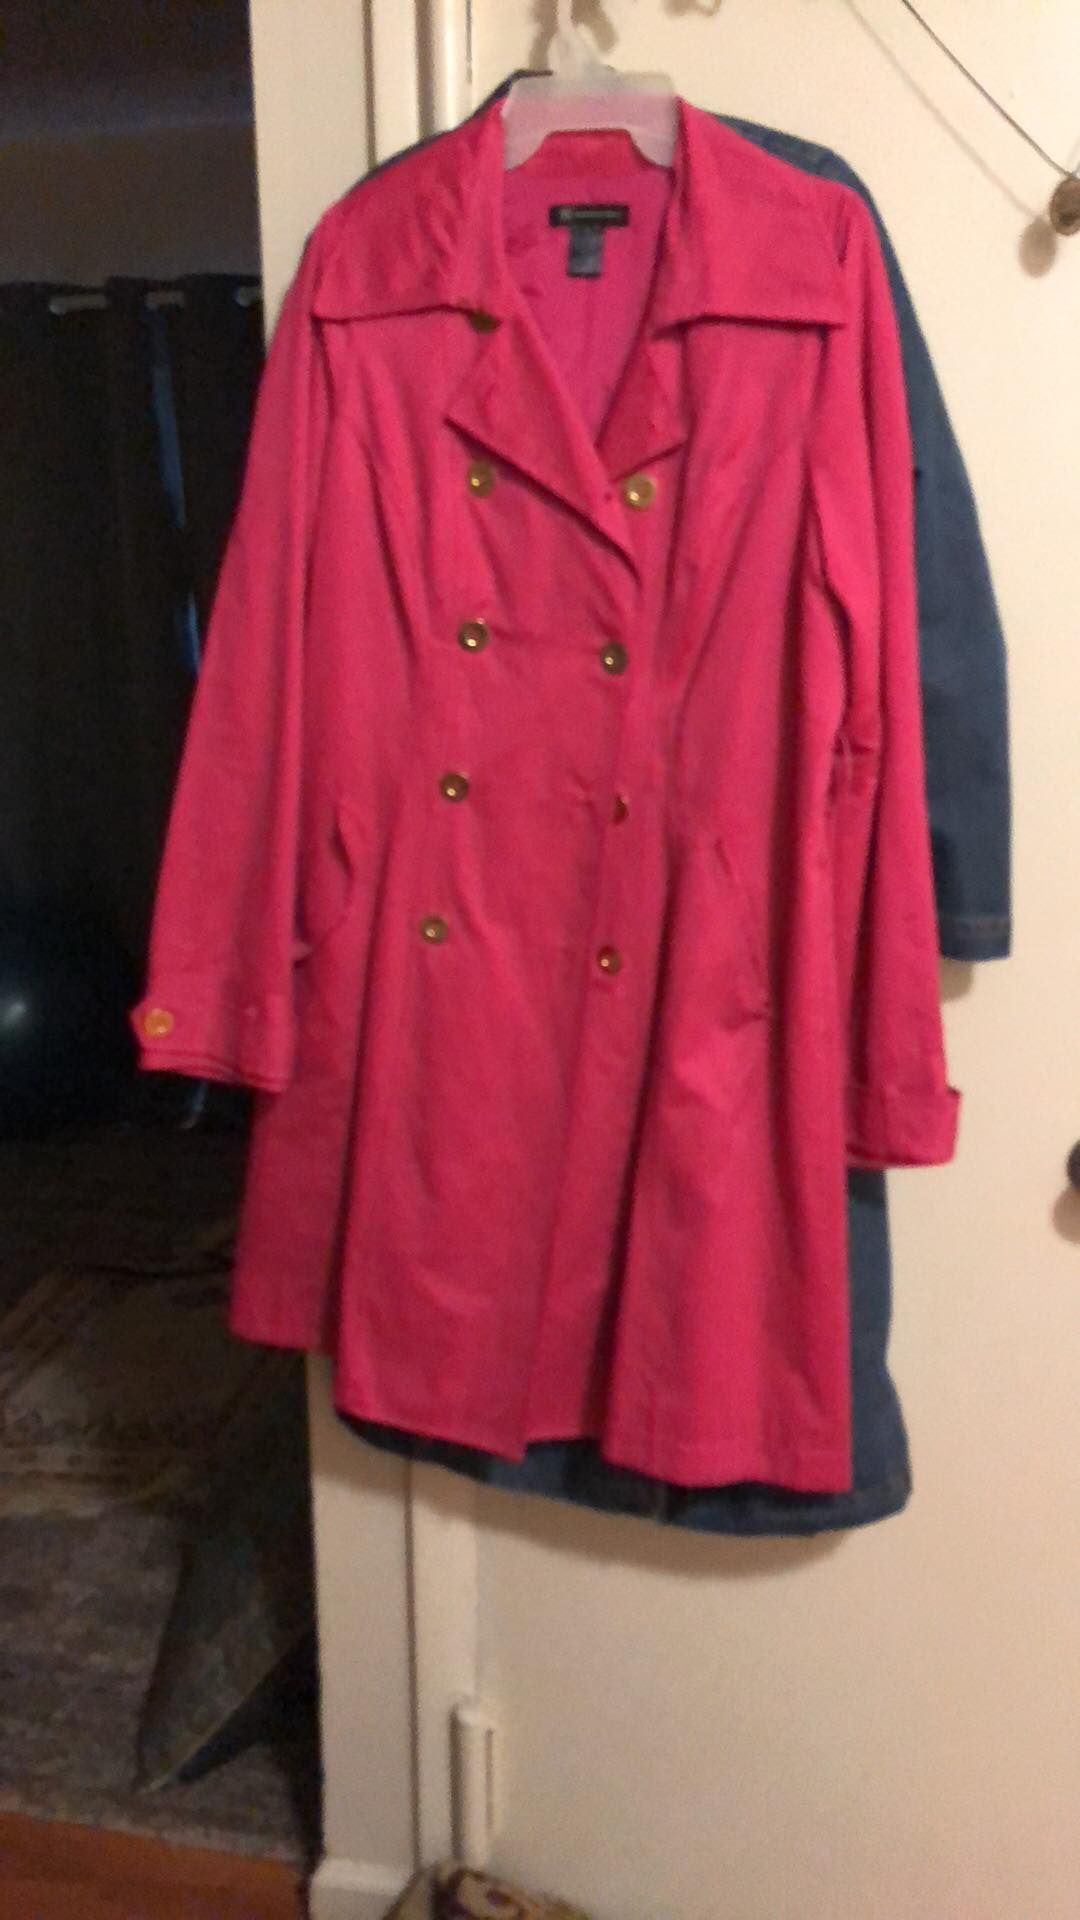 Pink coat